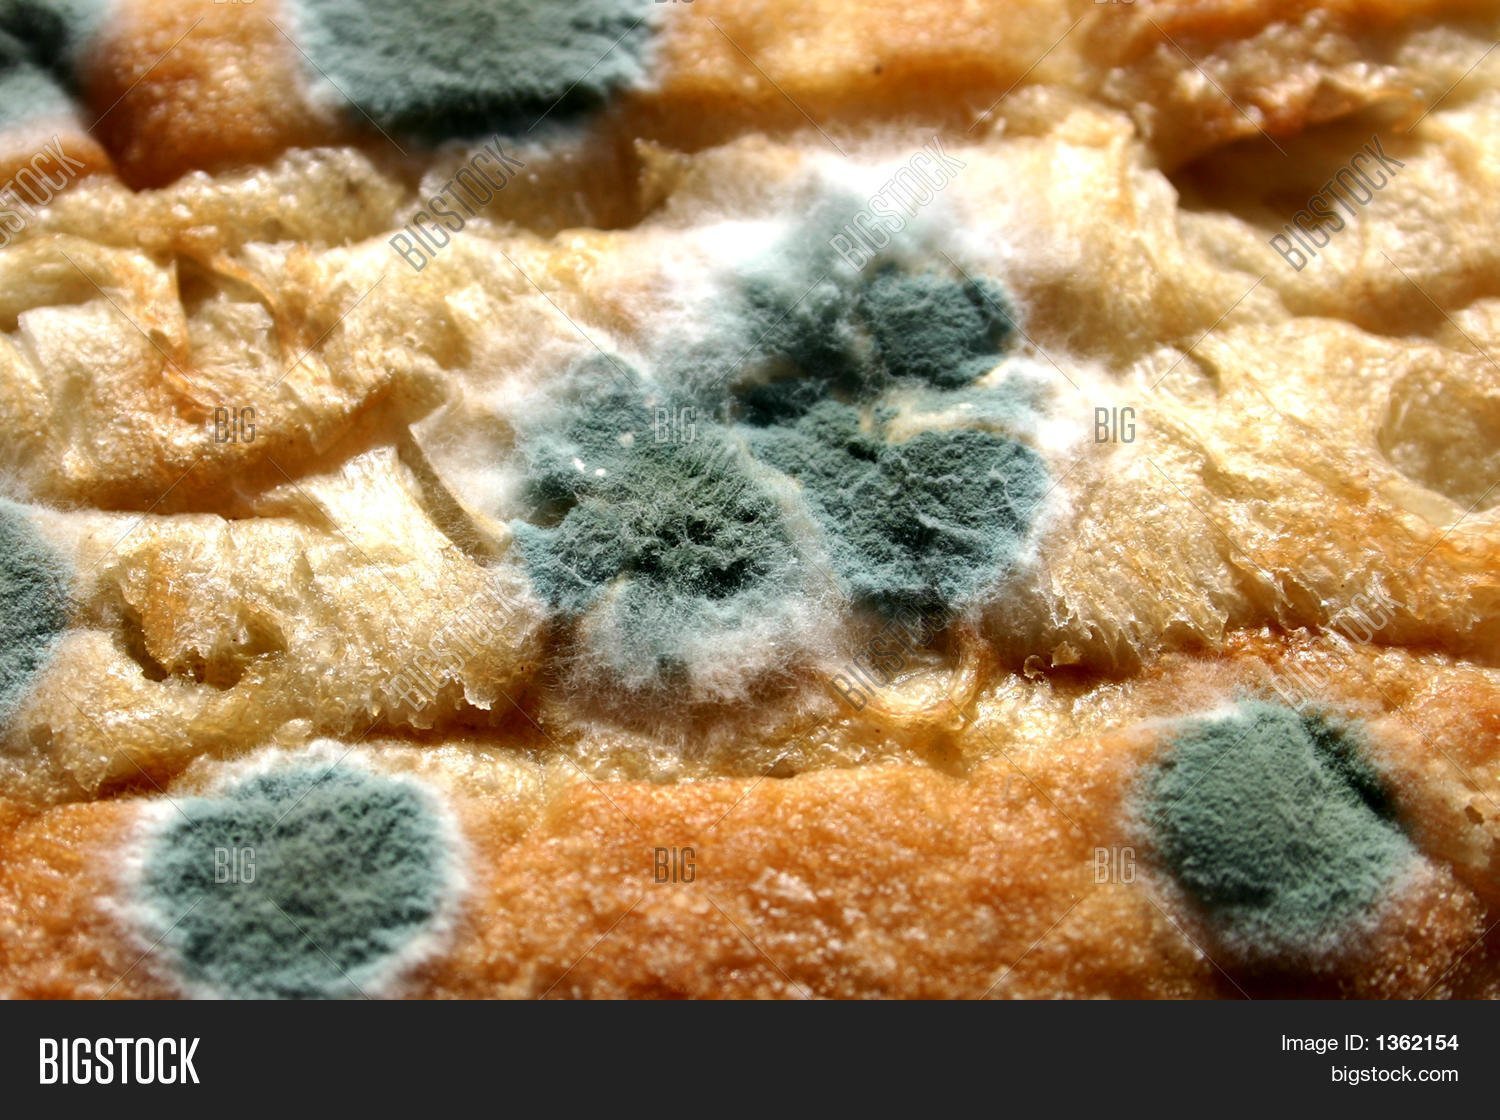 Плесневые грибы на хлебе. Зеленая плесень пеницилл на хлебе. Плесневые грибы на хлебе под микроскопом. Гриб пеницилл на хлебе. Плесень пеницилл.